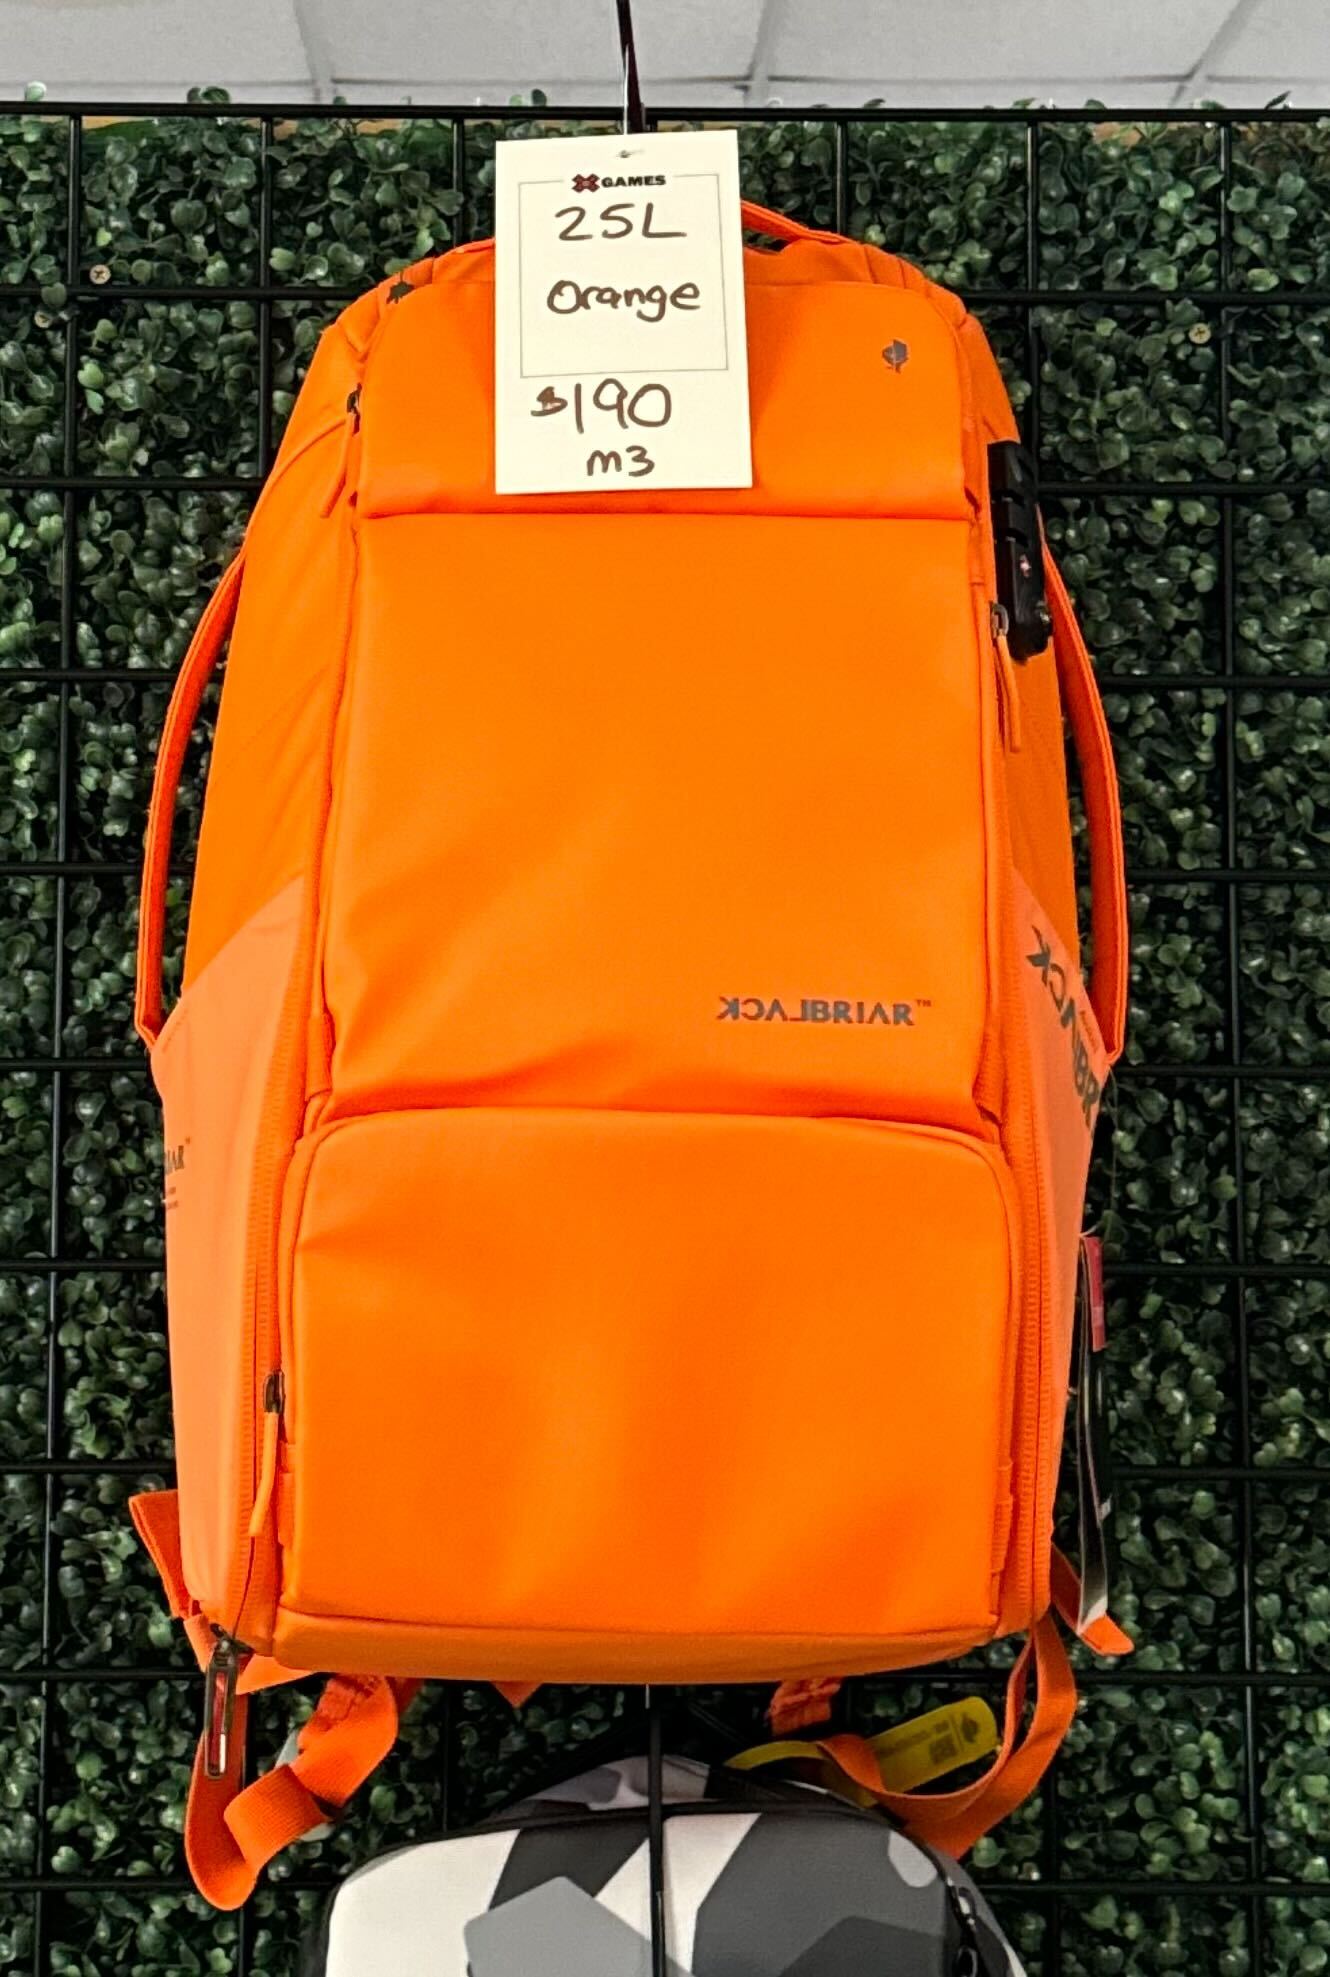 M3 25L Blackbriar Backpack Orange